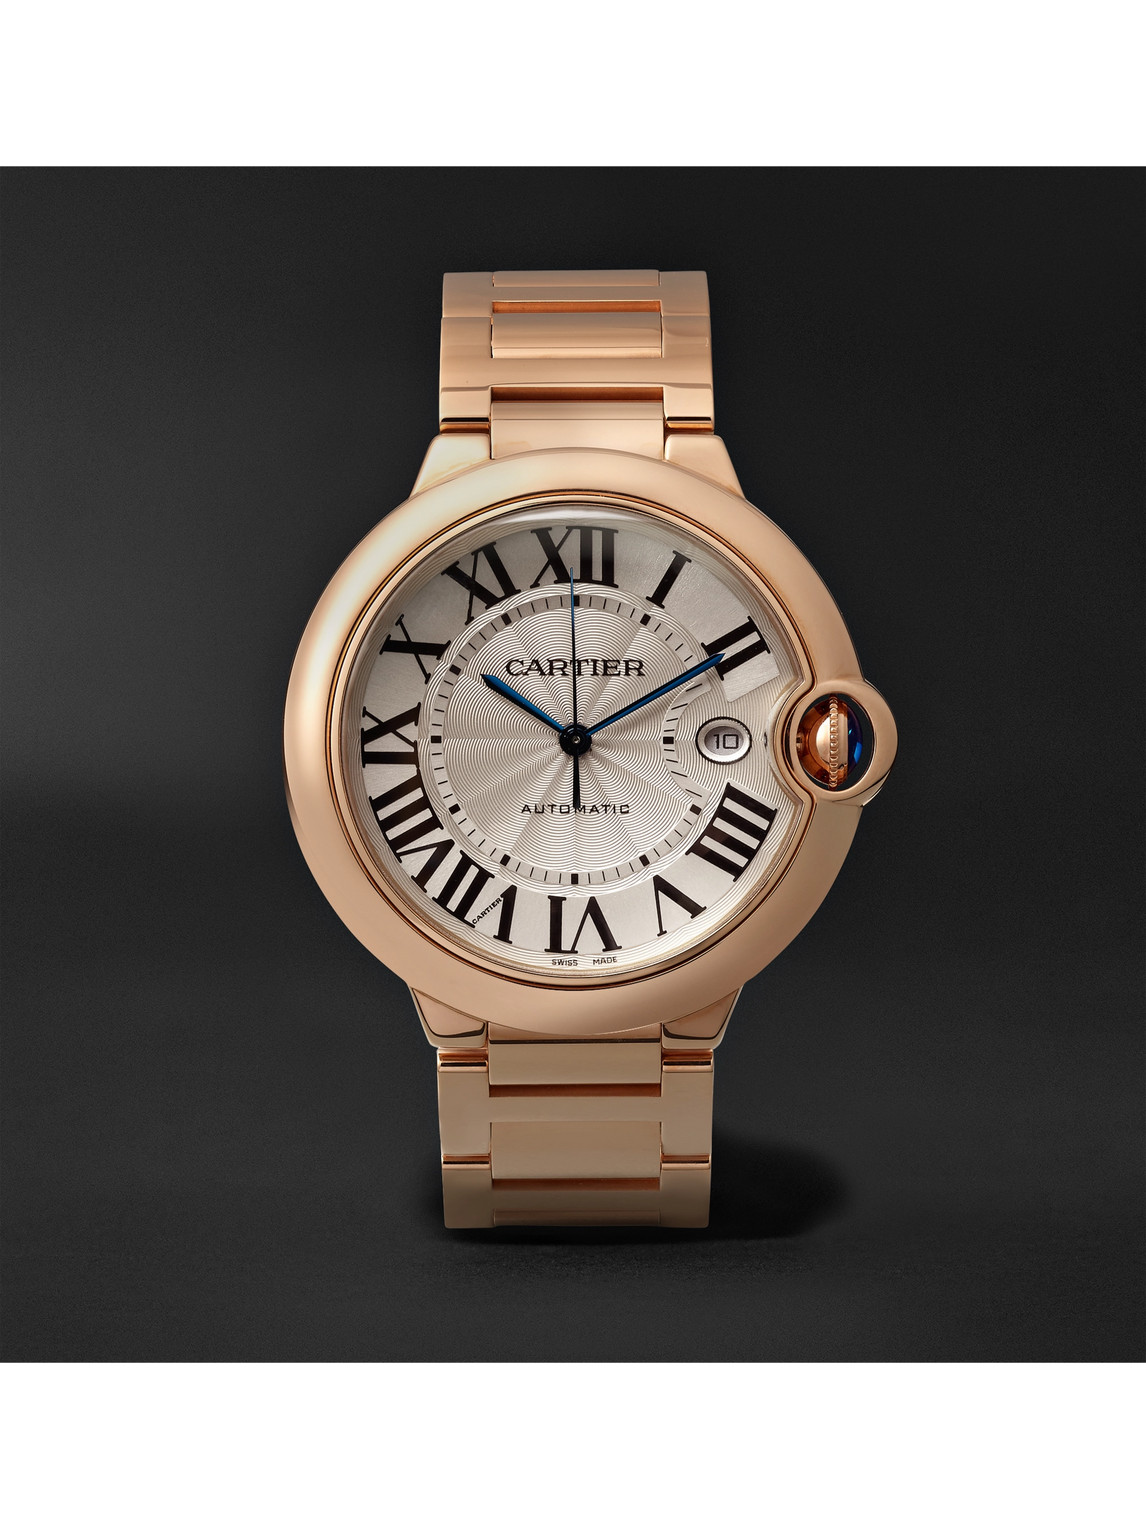 Ballon Bleu de Cartier Automatic 42mm 18-Karat Pink Gold Watch, Ref. No. CRWGBB0016